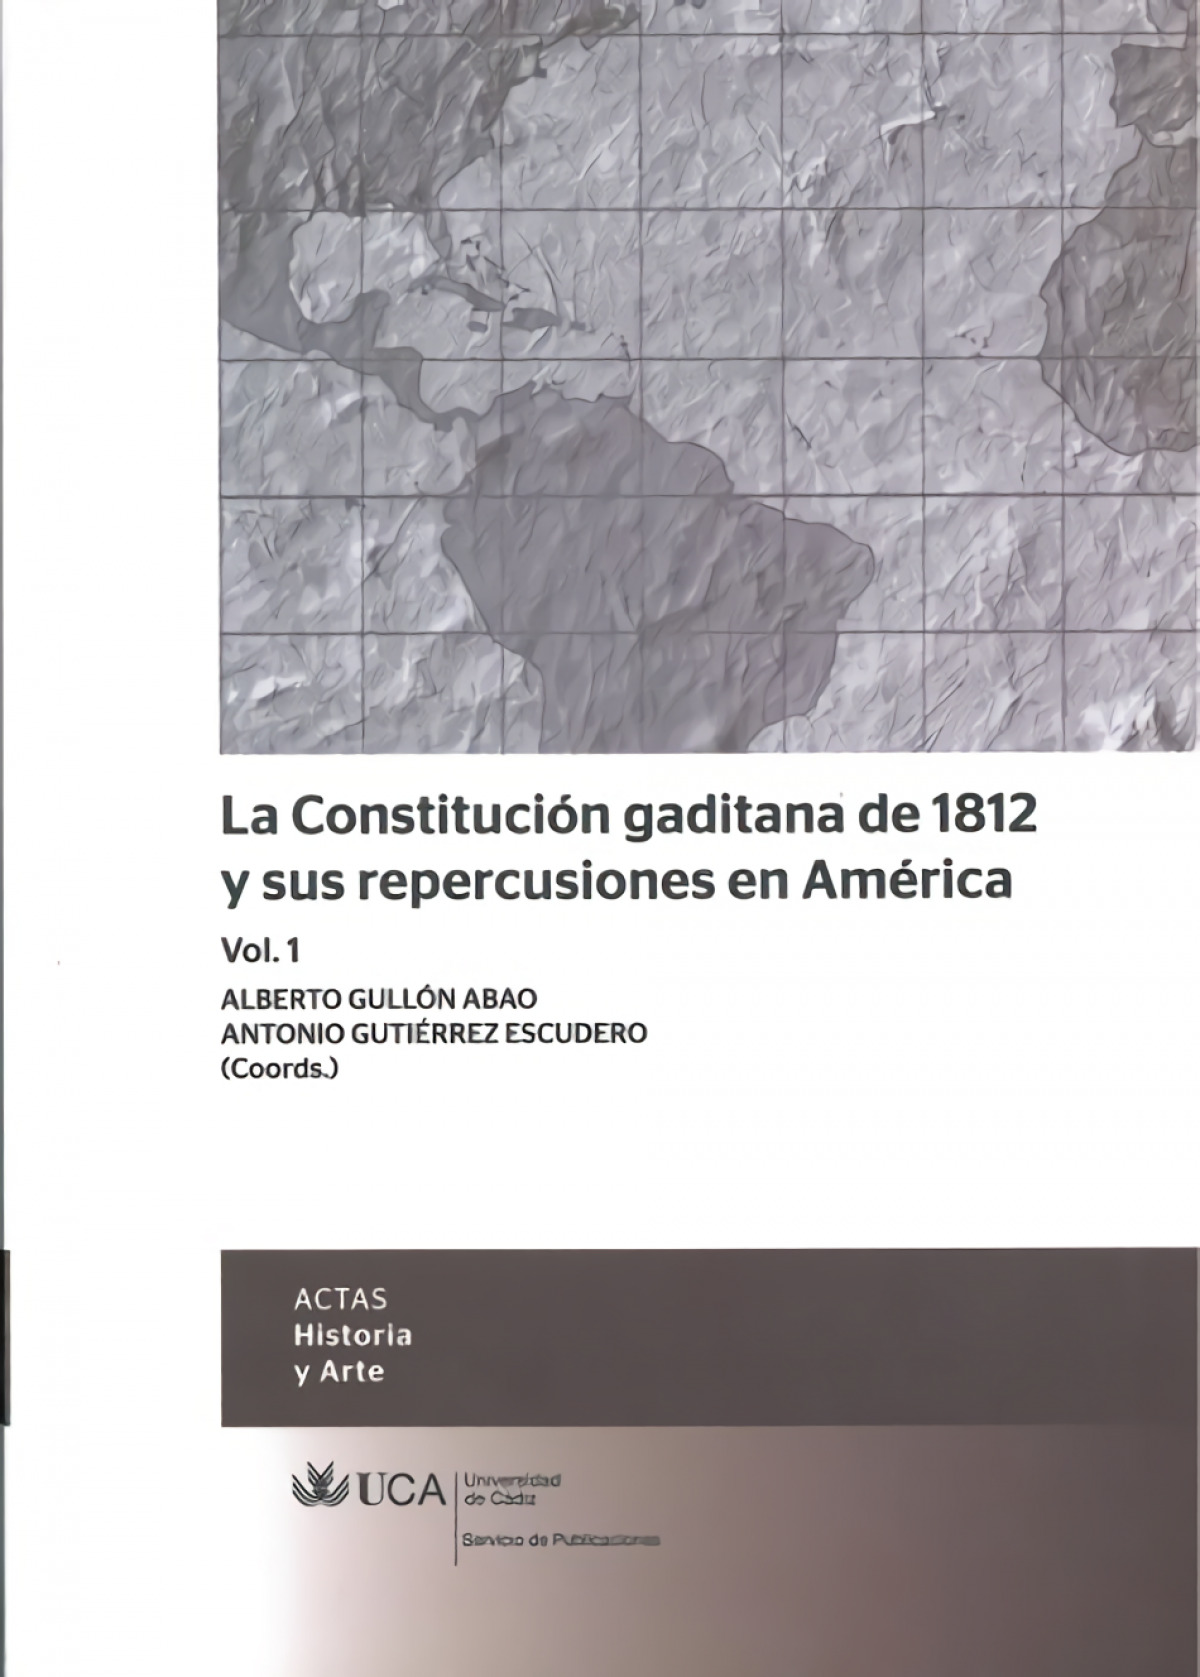 La Constitución gaditana de 1812 y sus repercusiones en América - Gutierrez Escudero, Antonio/Gullon Abao, Alberto/C